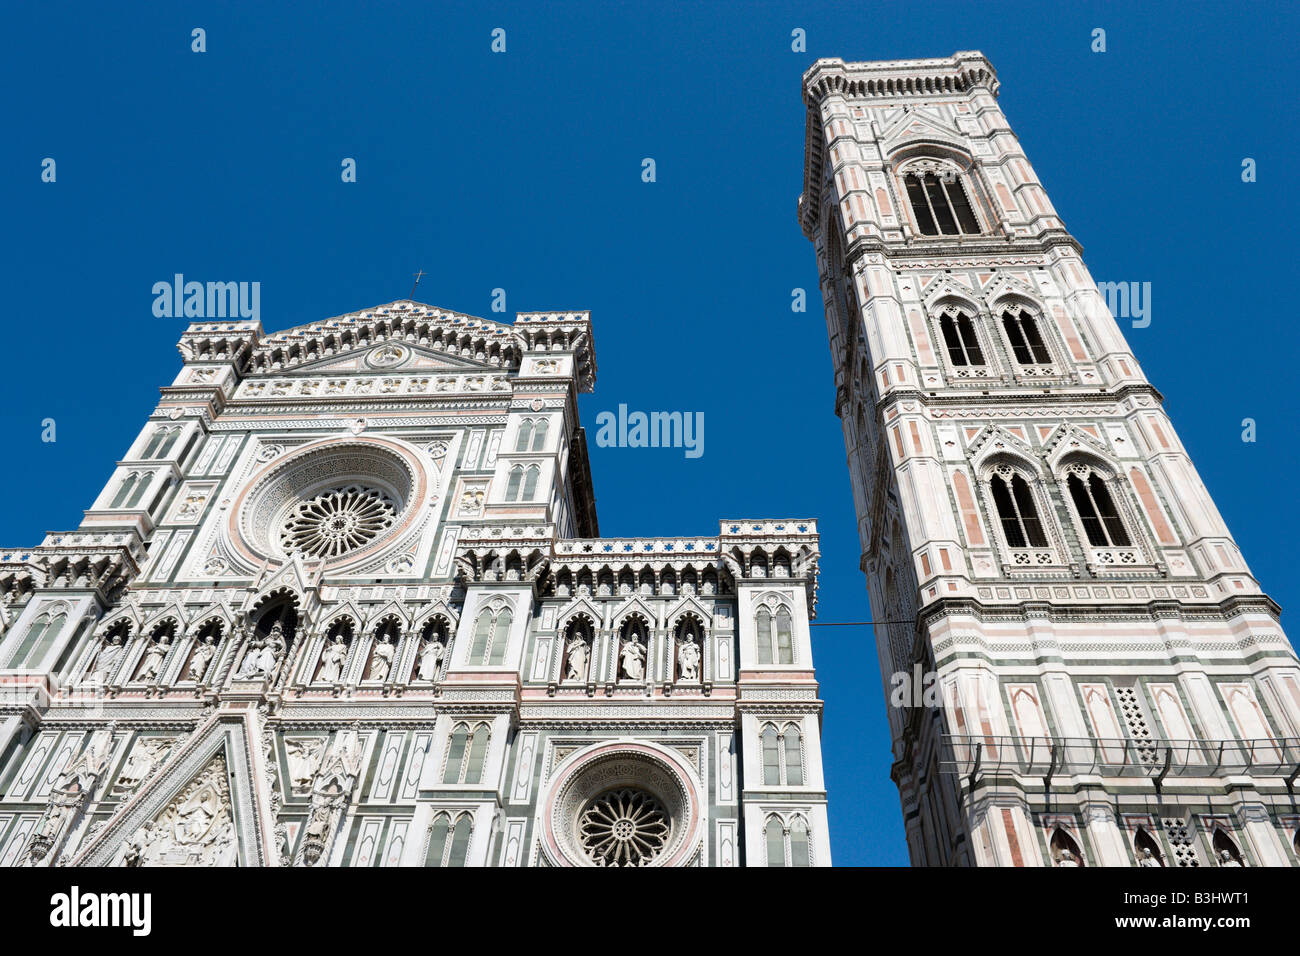 Façade de la basilique Santa Maria del Fiore (le Duomo) et le campanile de Giotto, la Piazza San Giovanni, Florence, Italie Banque D'Images